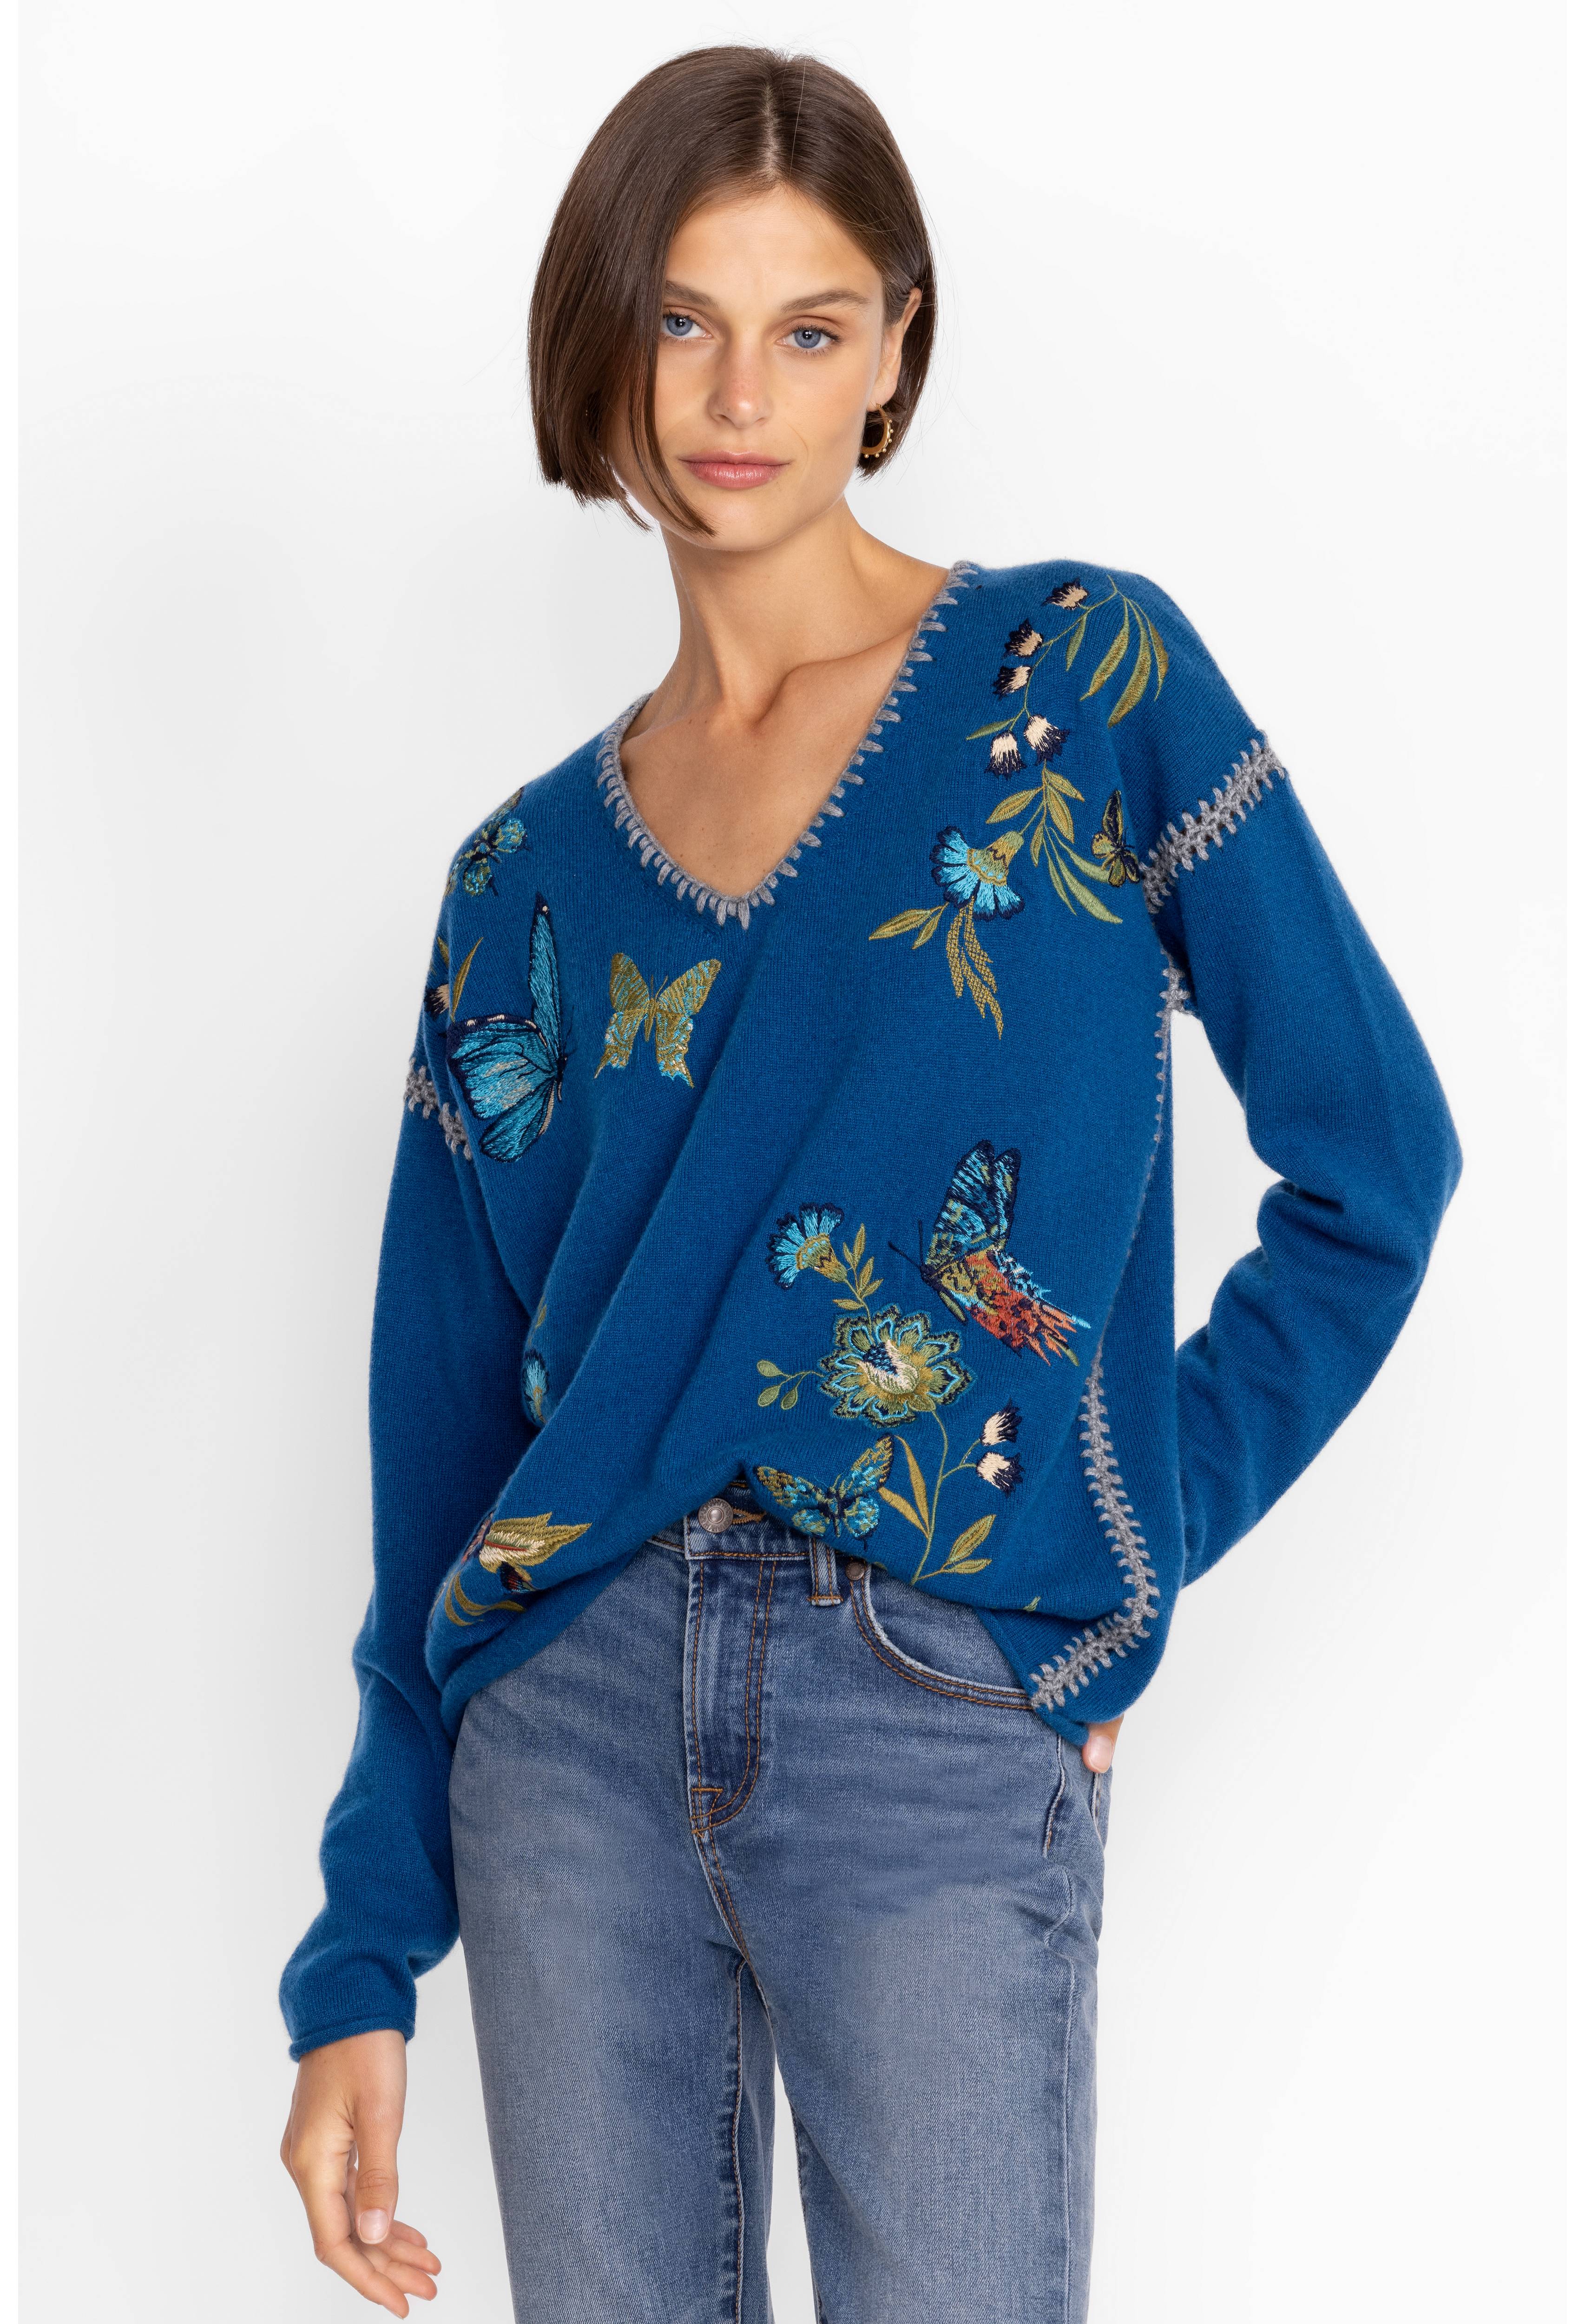 Sidona Cashmere Whipstitch Sweater, , large image number 1